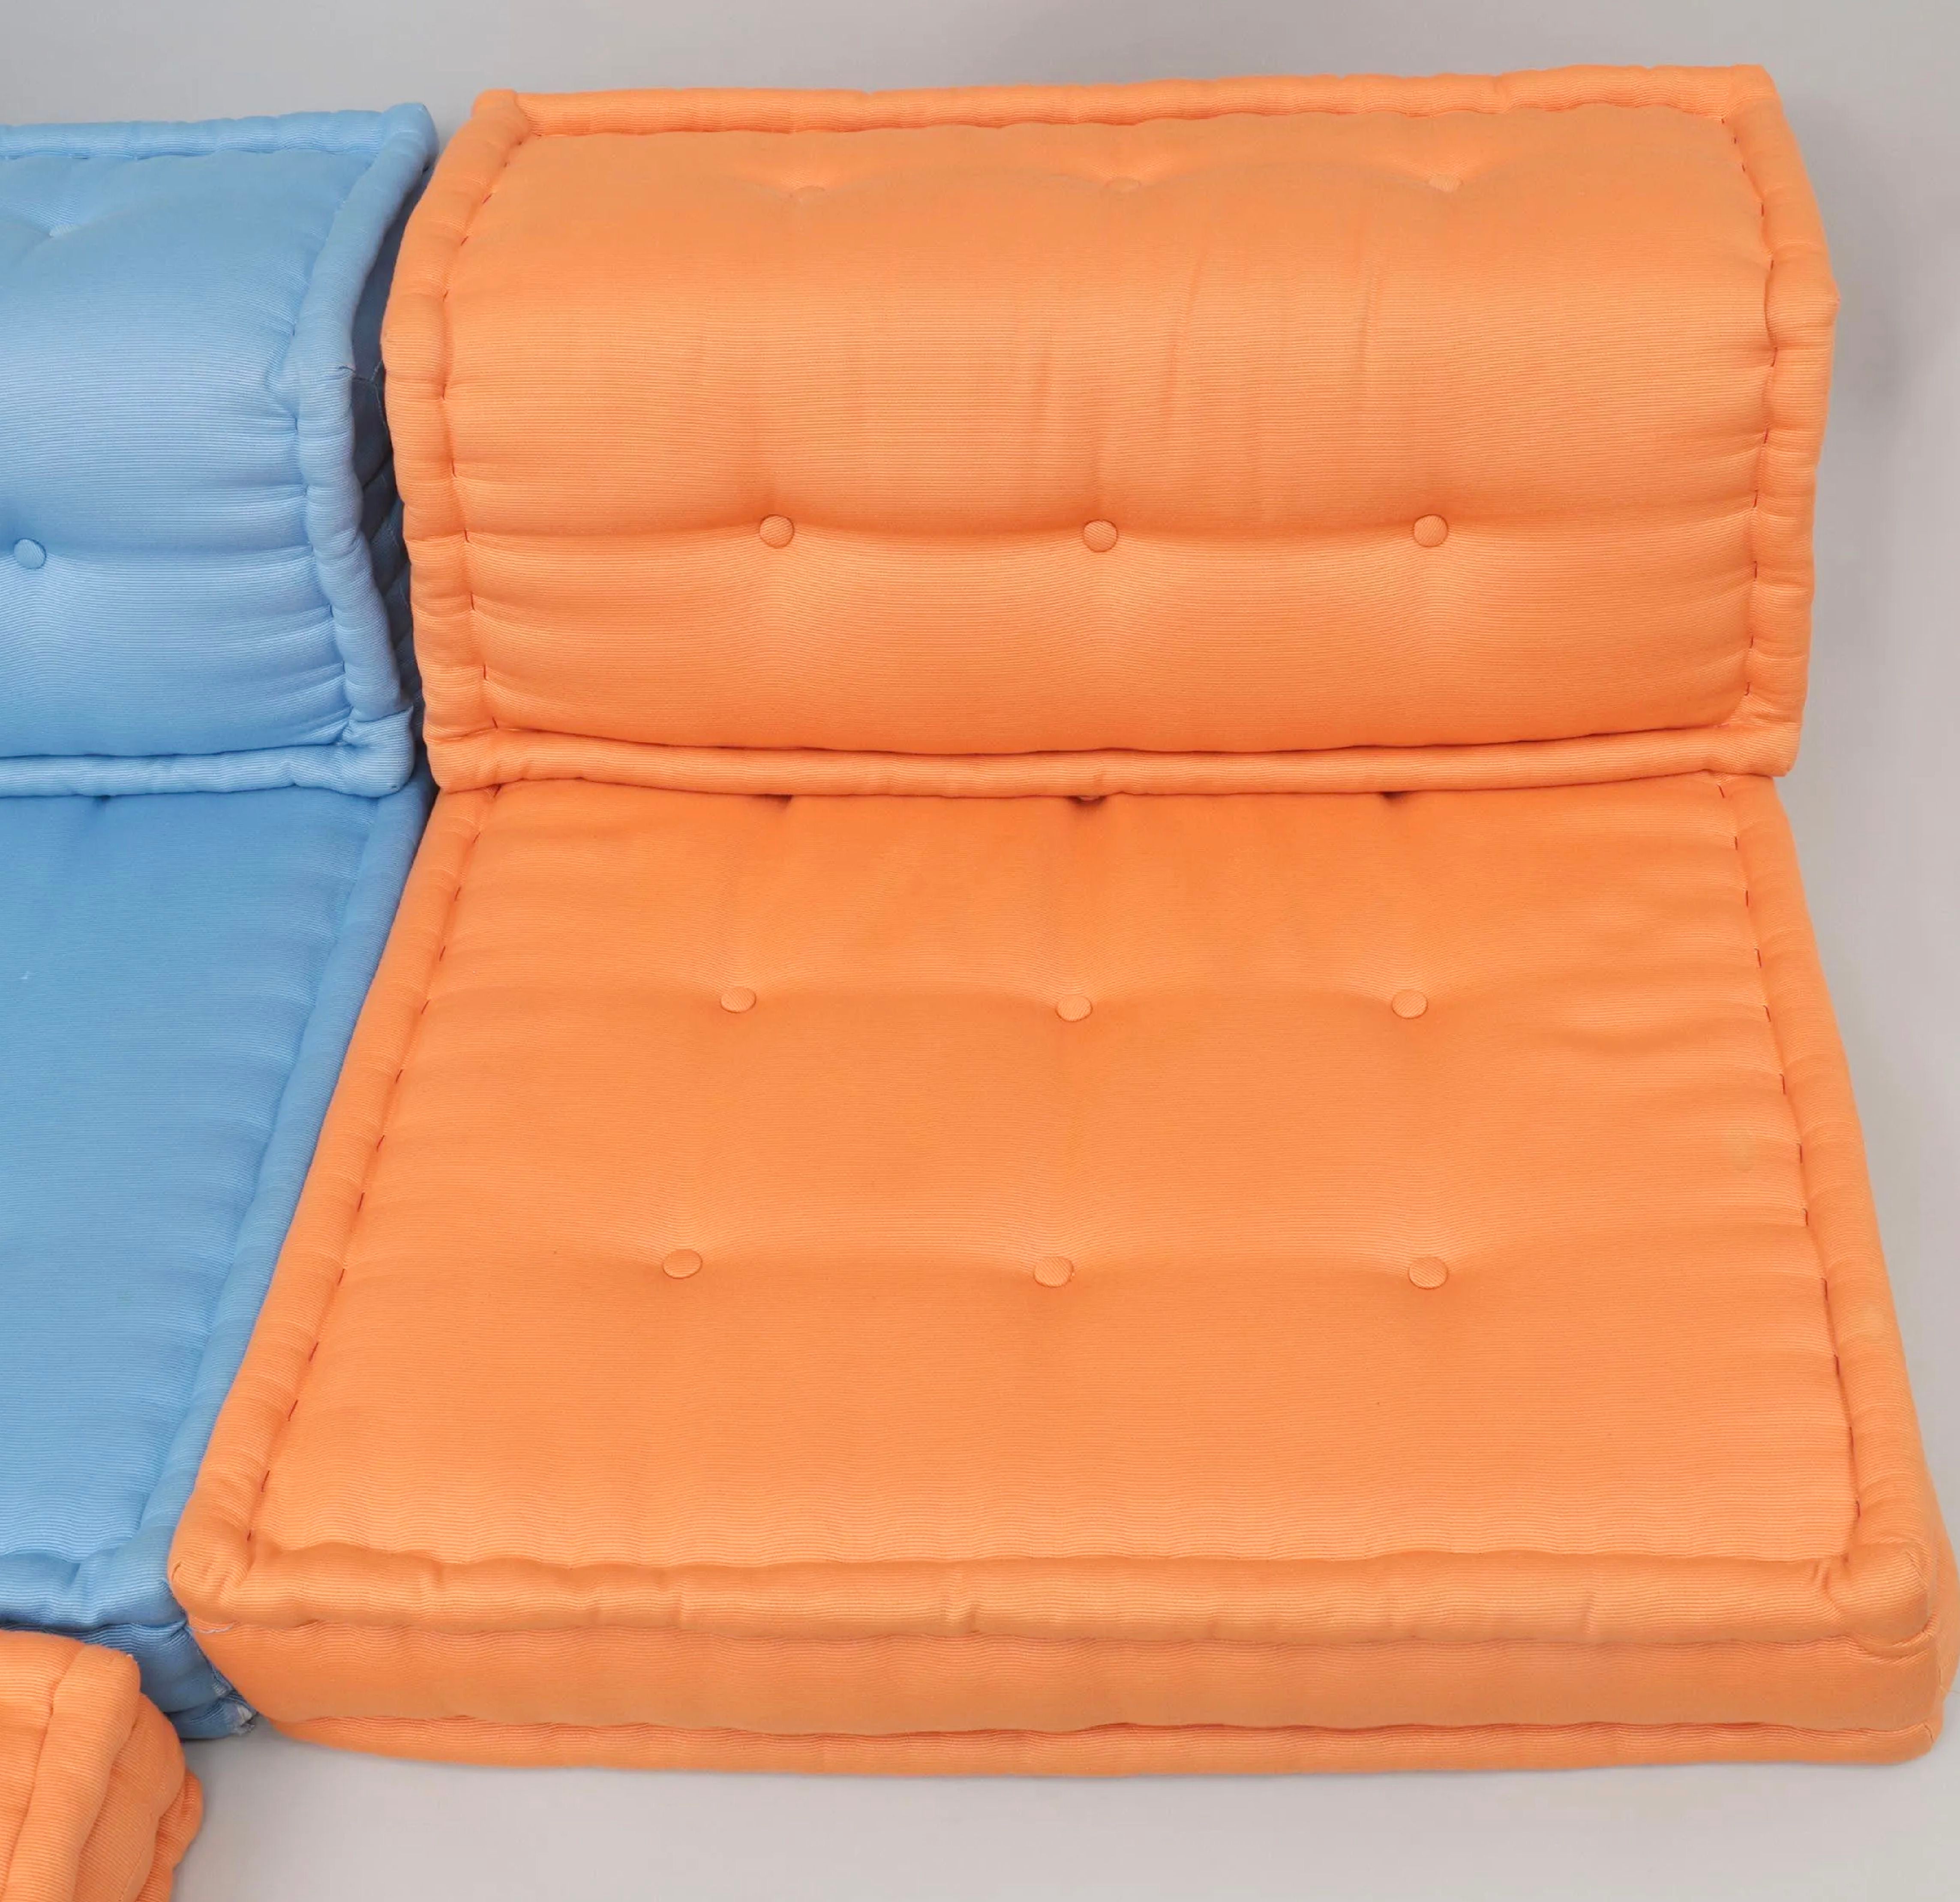 Ensemble de chaises de salon orange Mah Jong de Roche Bobois, Hans Hopfer, Italie. Cette offre concerne un ensemble d'éléments comprenant un coussin carré et un dossier droit, tous deux en textile orange.
De Roche Bobois : Hans Hopfer a conçu le